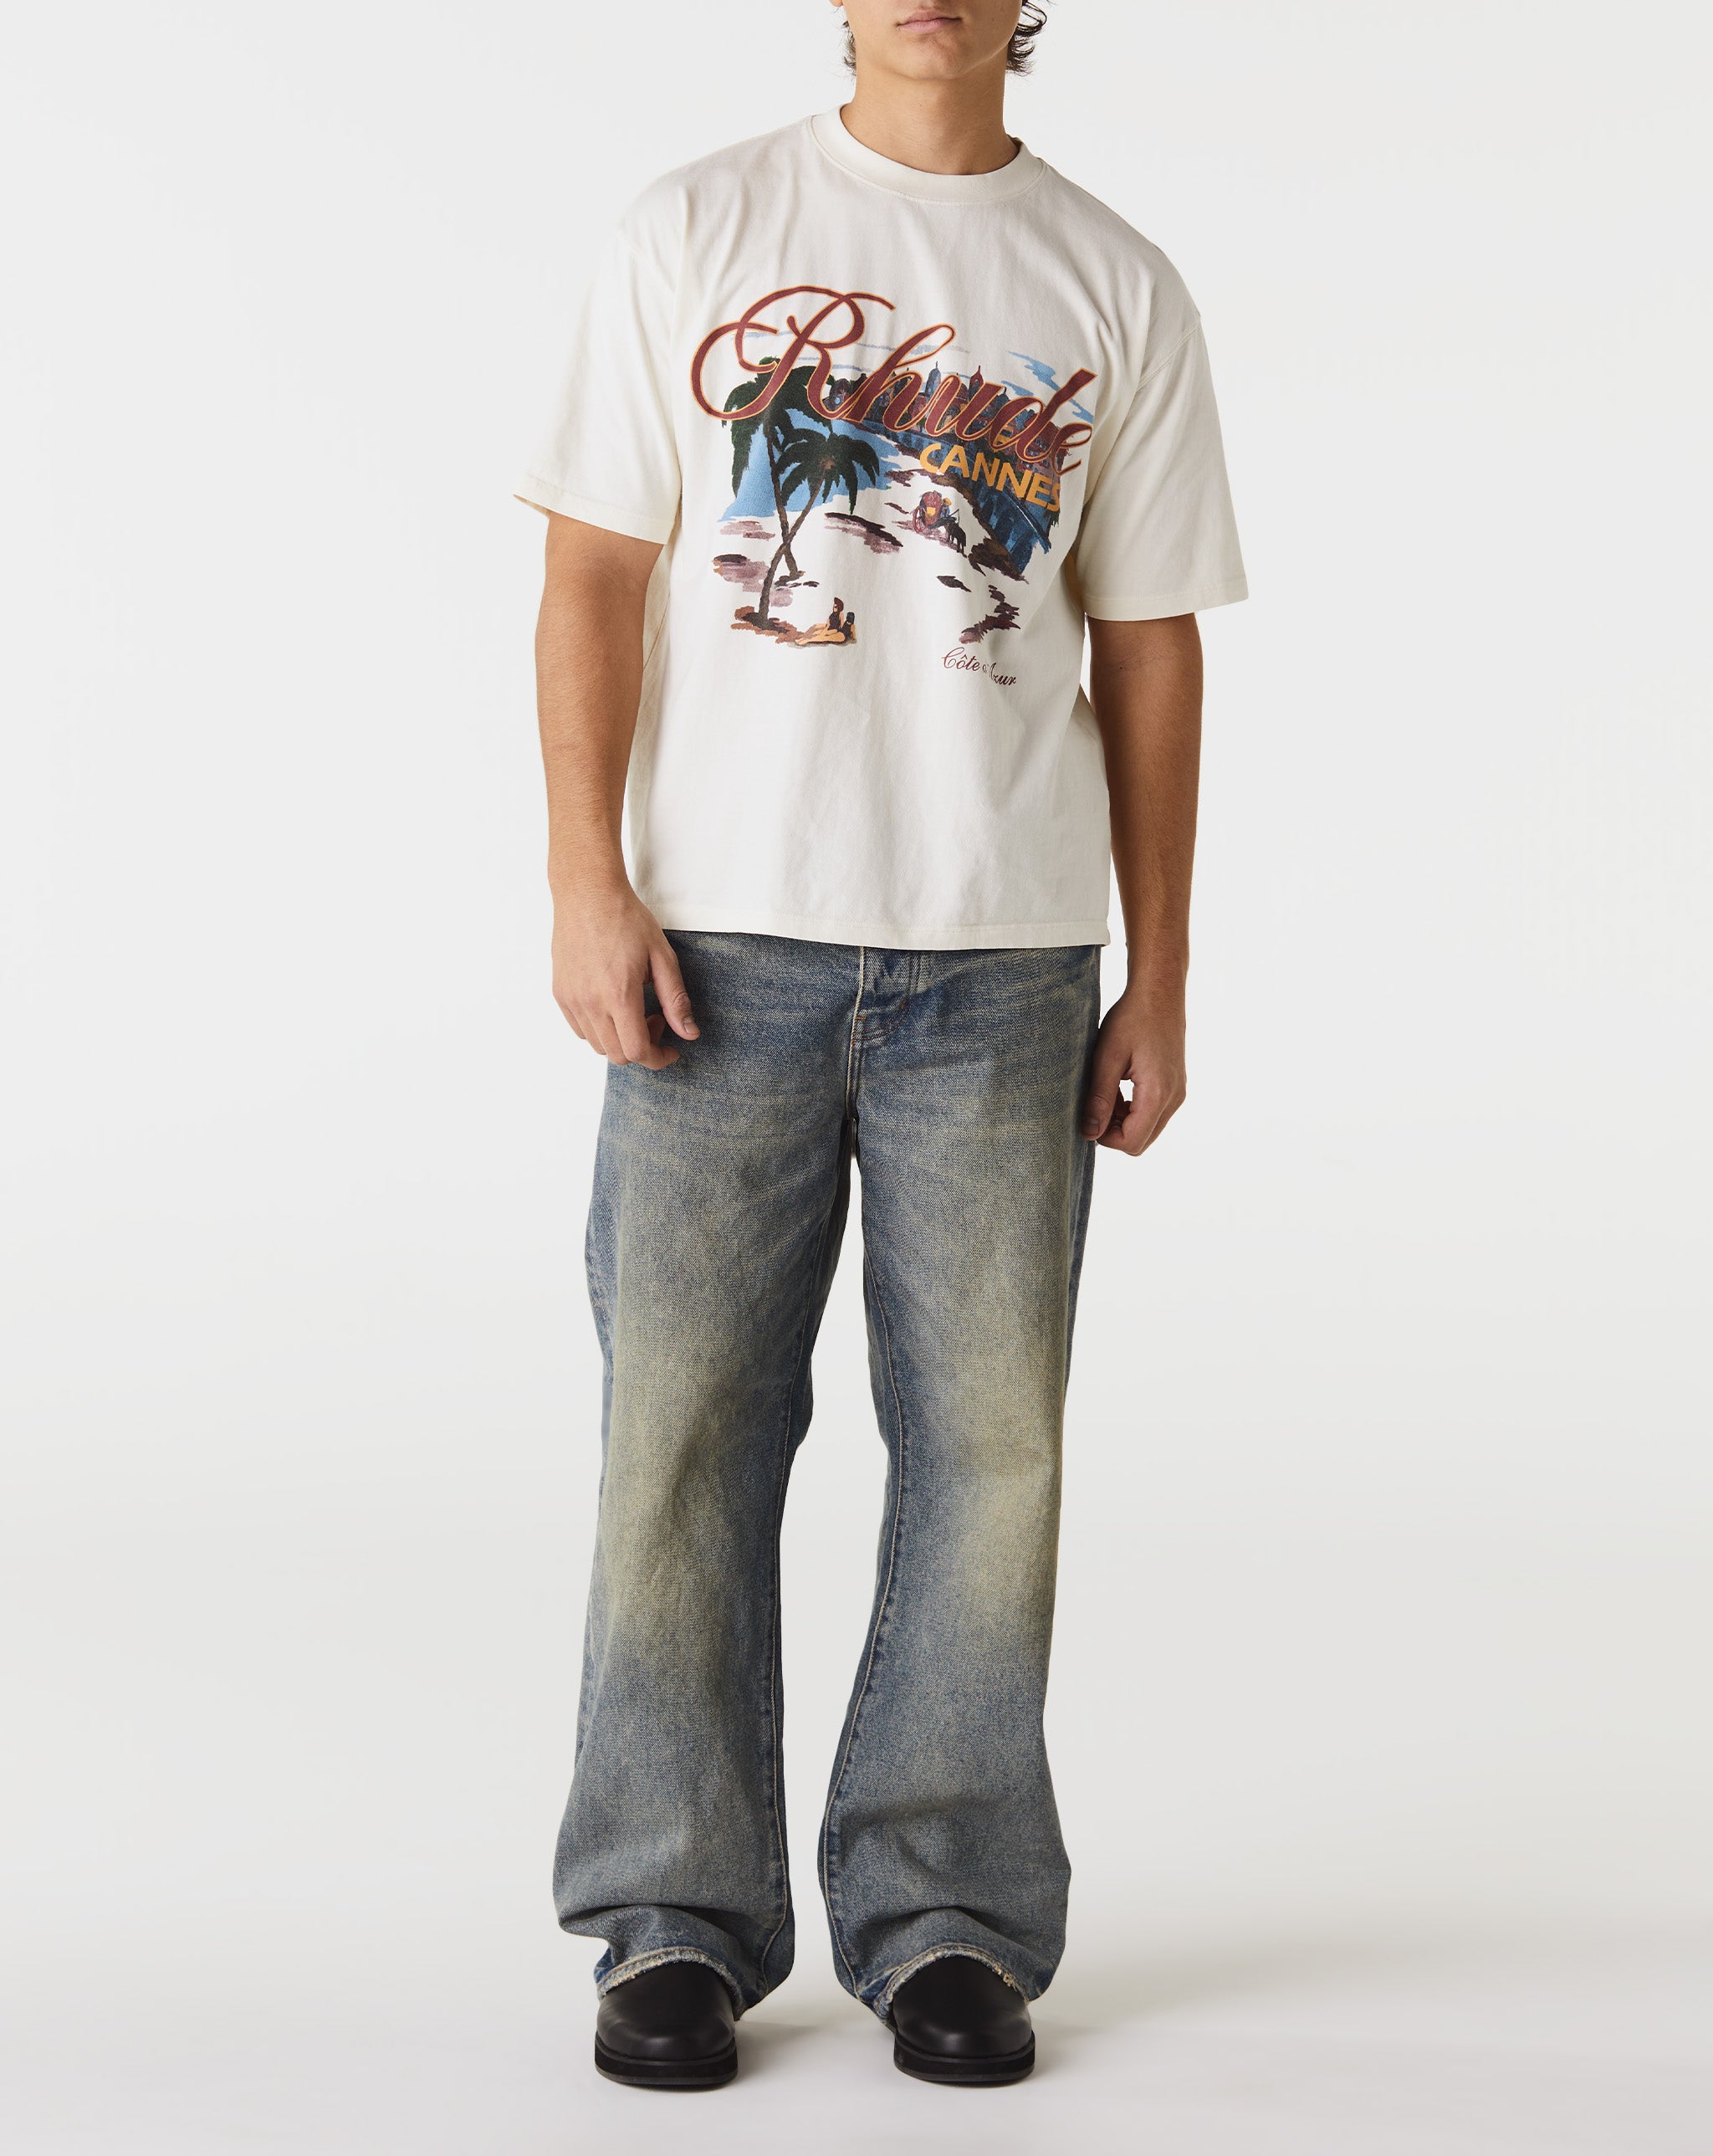 Rhude Cannes Beach T-Shirt  - Cheap Urlfreeze Jordan outlet